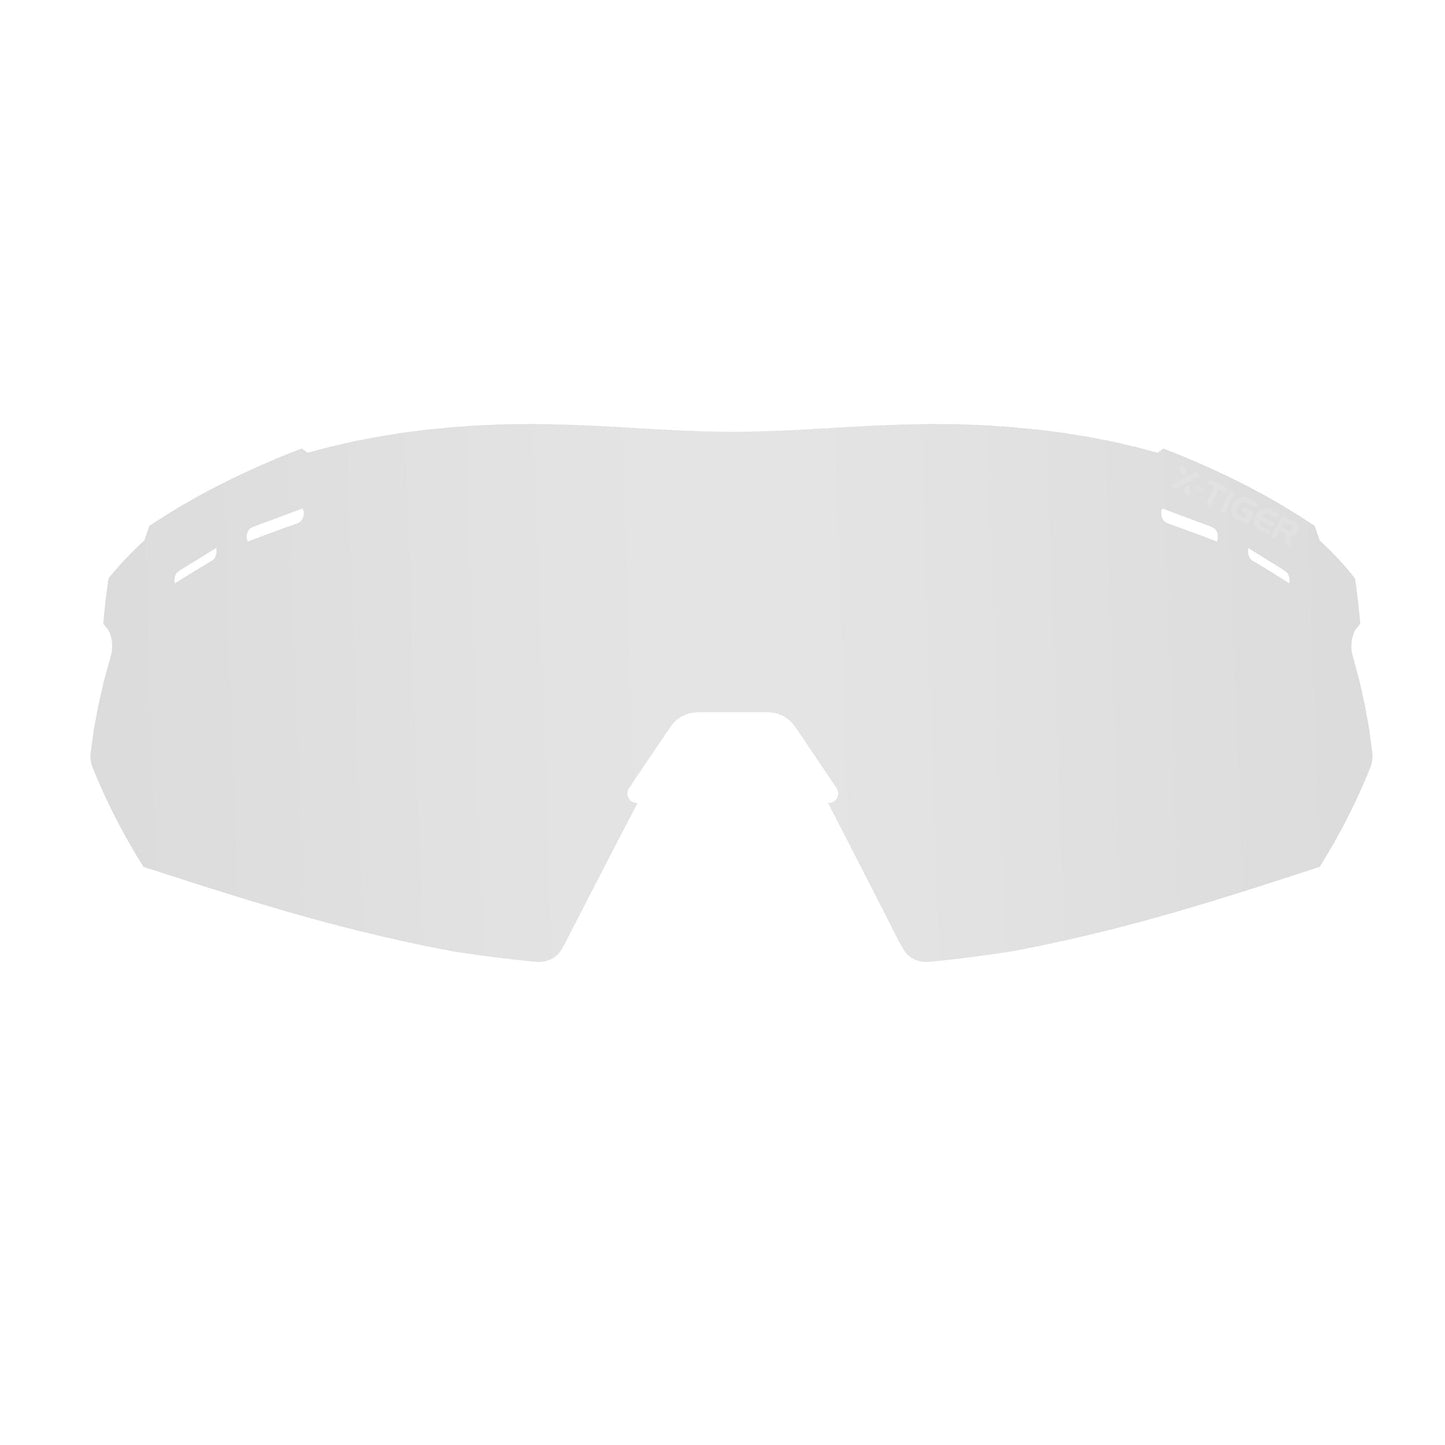 JPC Riding glasses lenses - X-Tiger